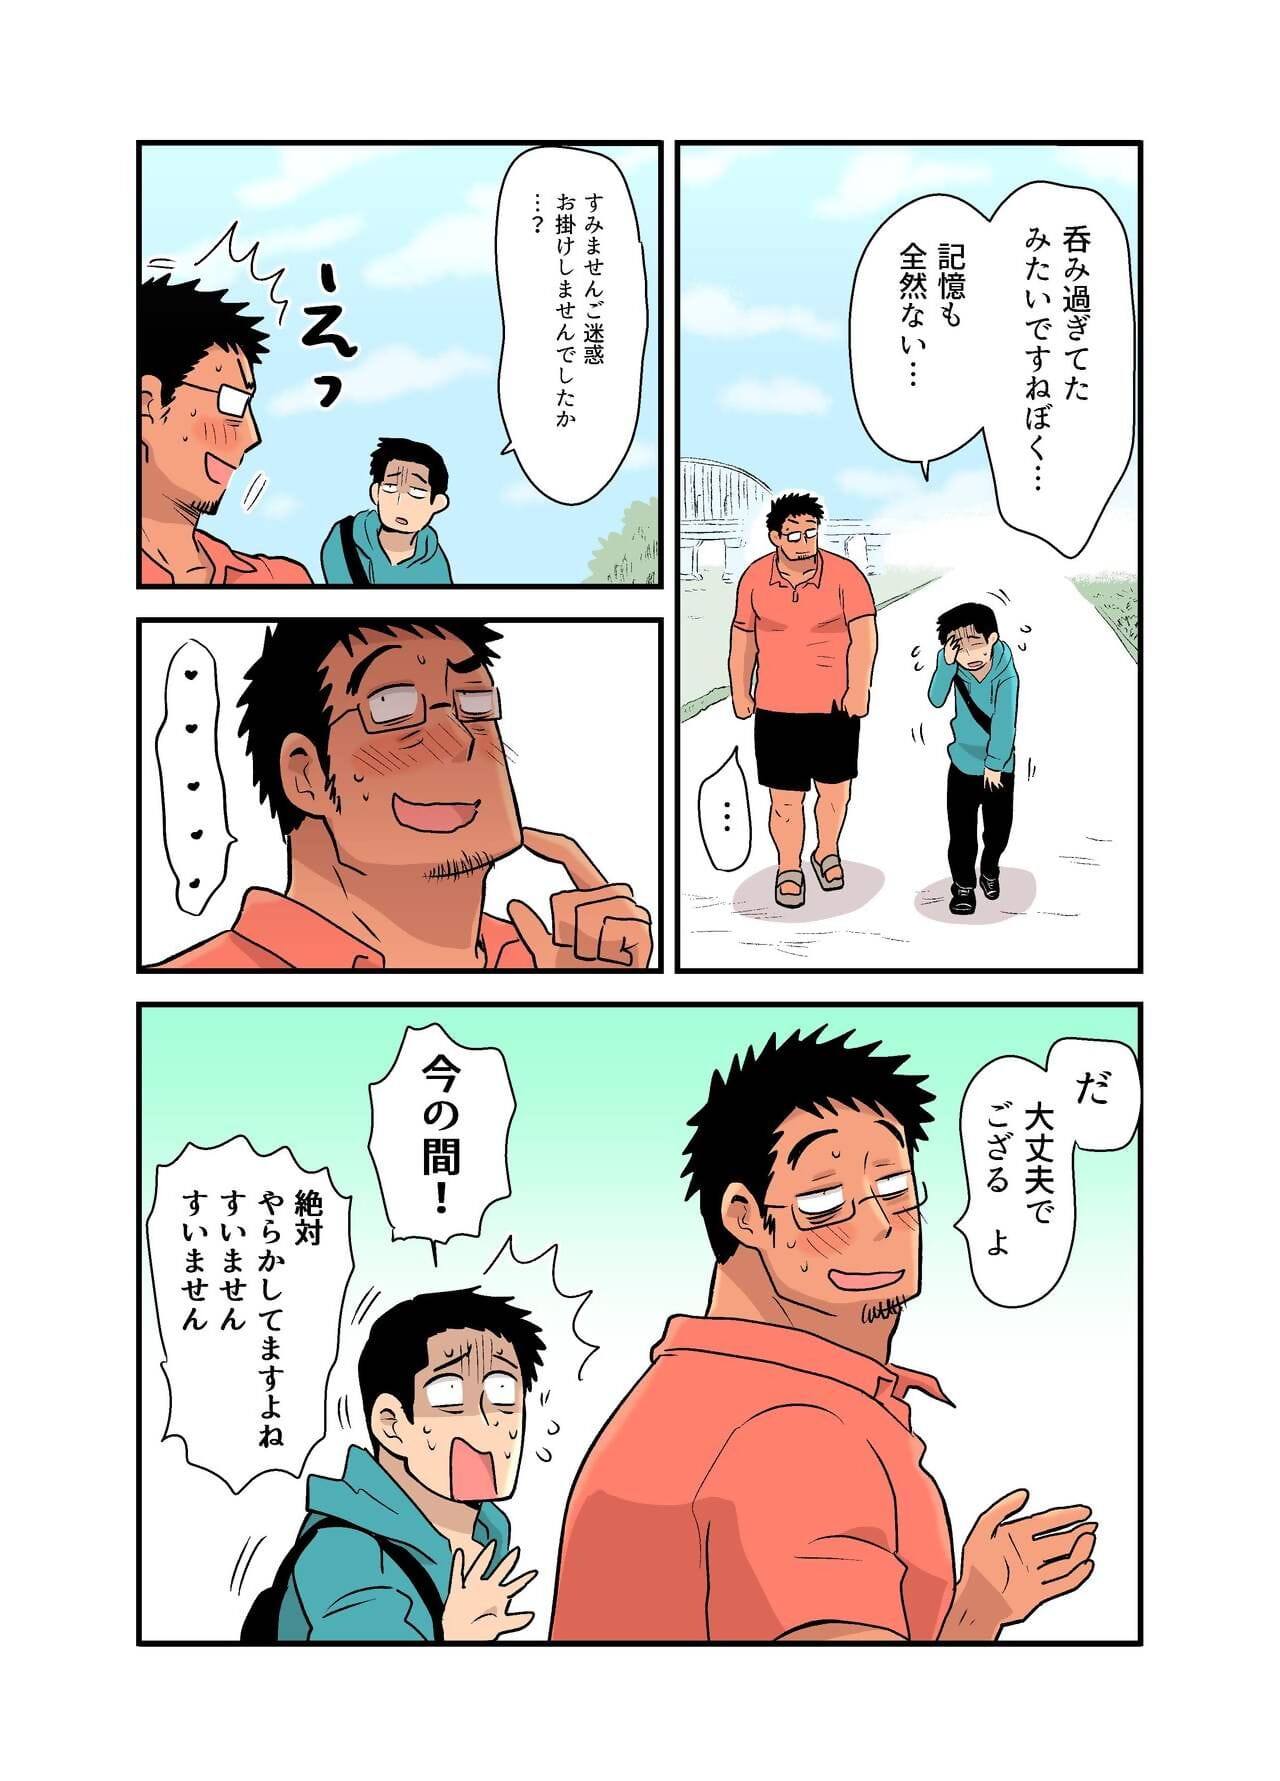 yotta hyoushi NI issen O koe sase rarete shimatta otaku macho no hanashi Parte 2 page 1